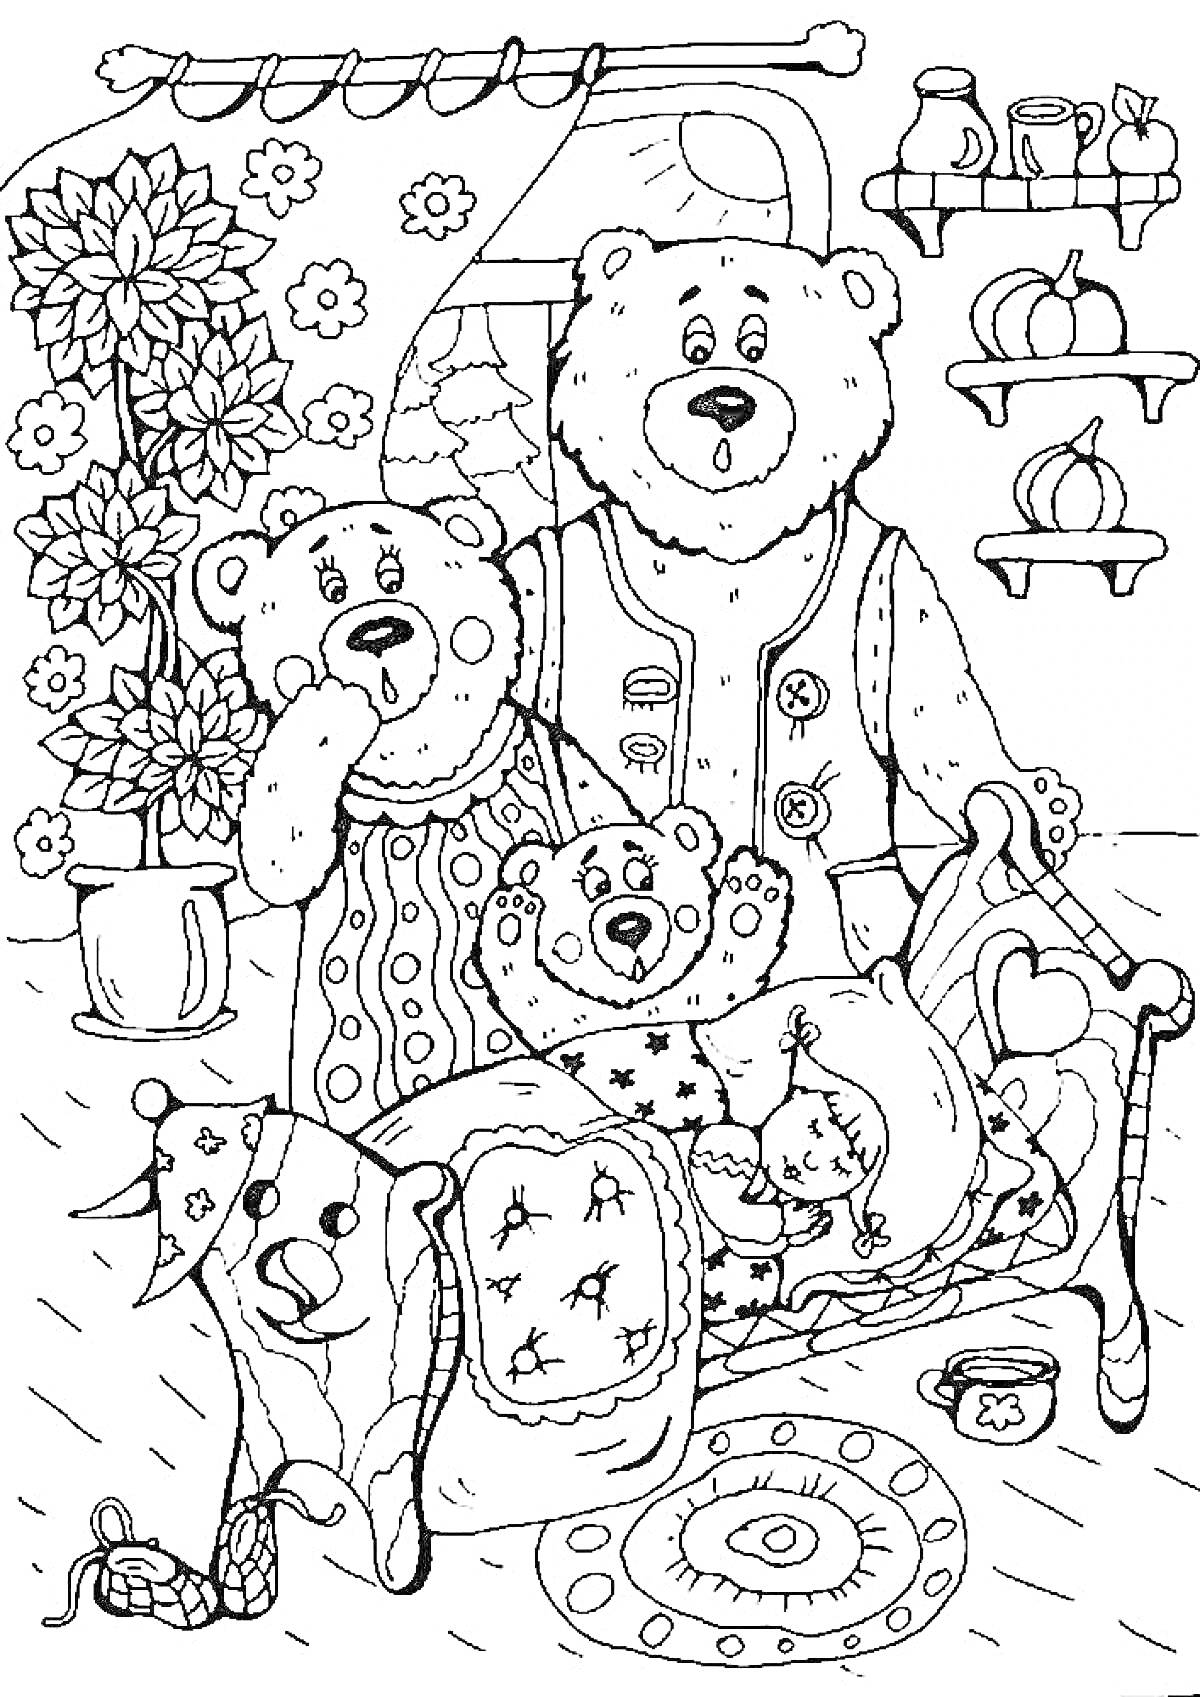 Раскраска Три медведя и девочка на кровати в уютной комнате с цветами и полками с посудой